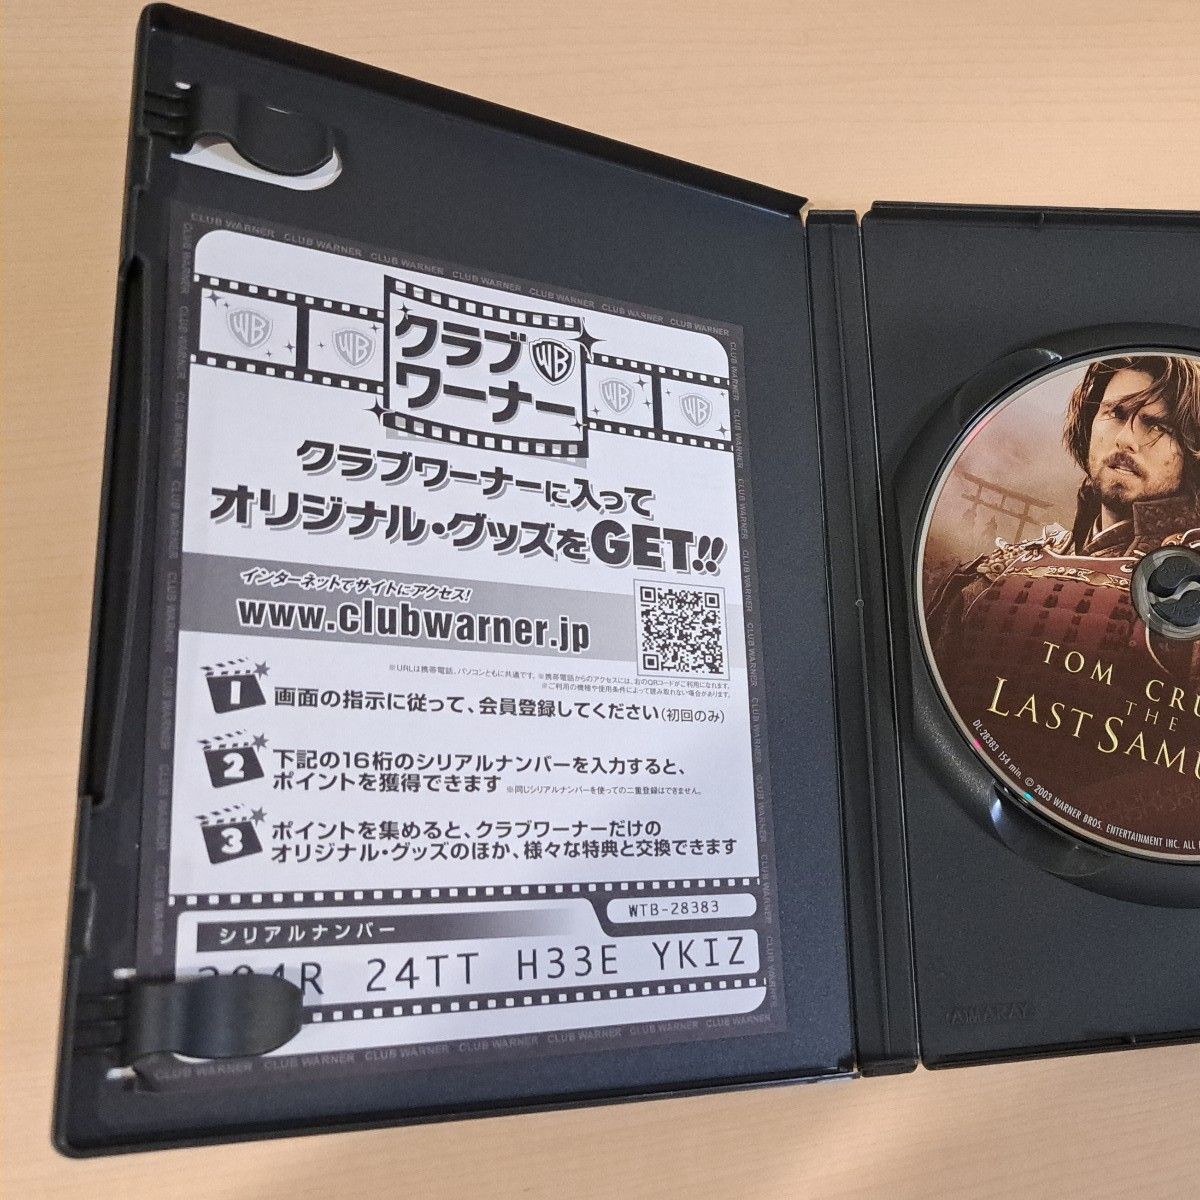 ラストサムライ DVD TOM CRUISE THE LAST SAMURAI